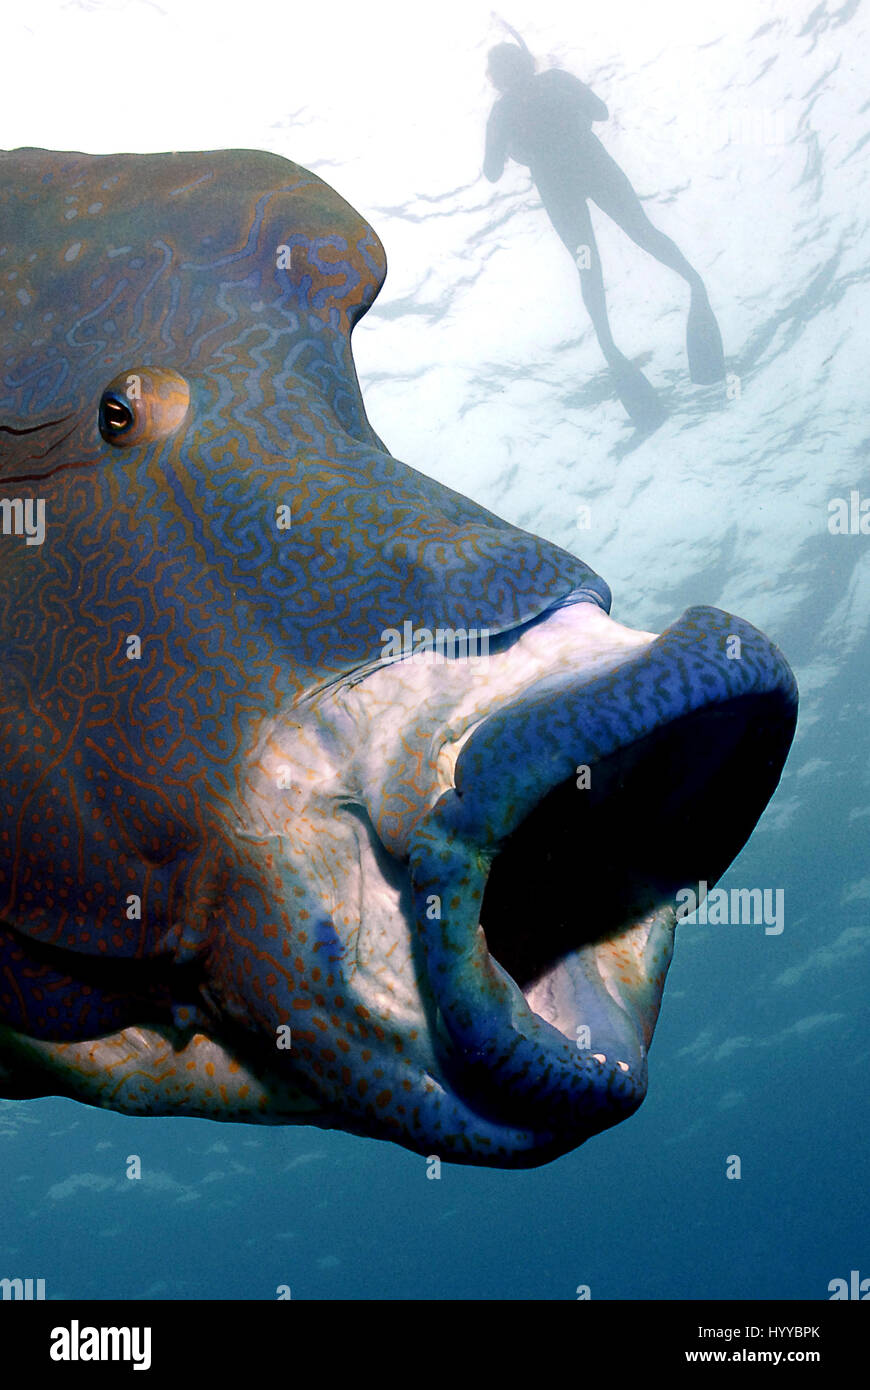 Pesce gigante con la bocca aperta. La sensazionale inversione di ruolo le  foto sembrano mostrare un enorme cinque piedi di pesce lungo la  deglutizione di un subacqueo in immersione per il suo